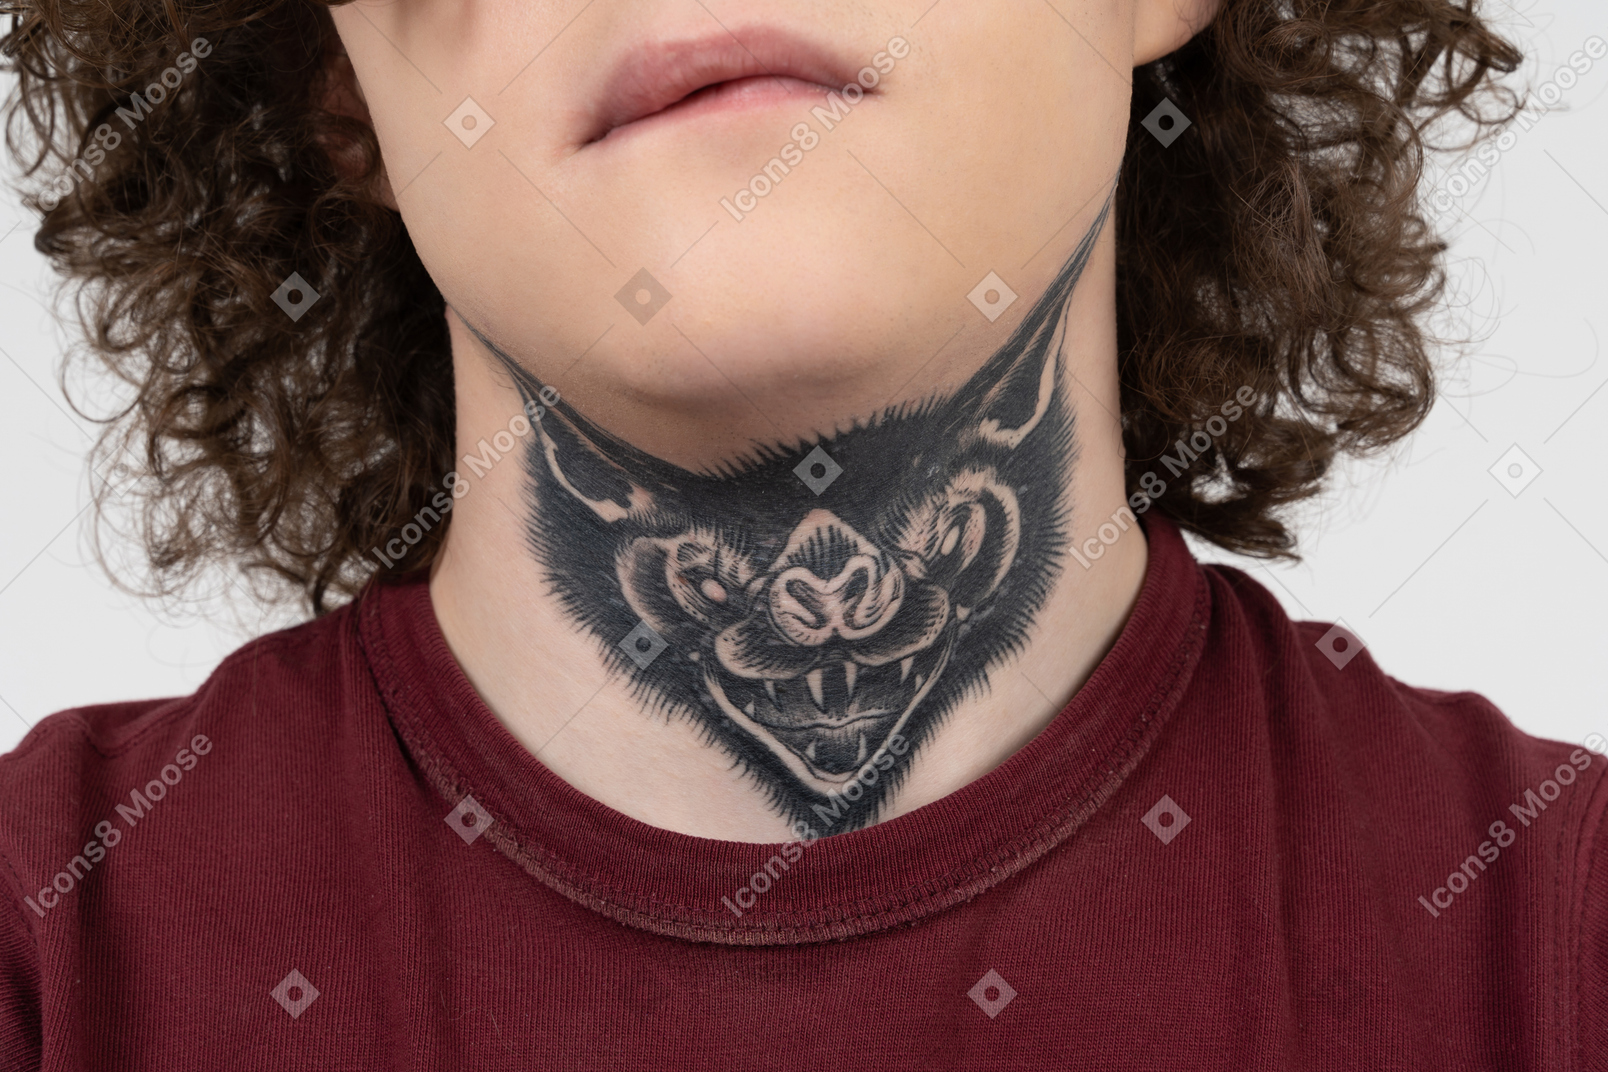 Adolescente brunet con il tatuaggio di un predatore sul collo